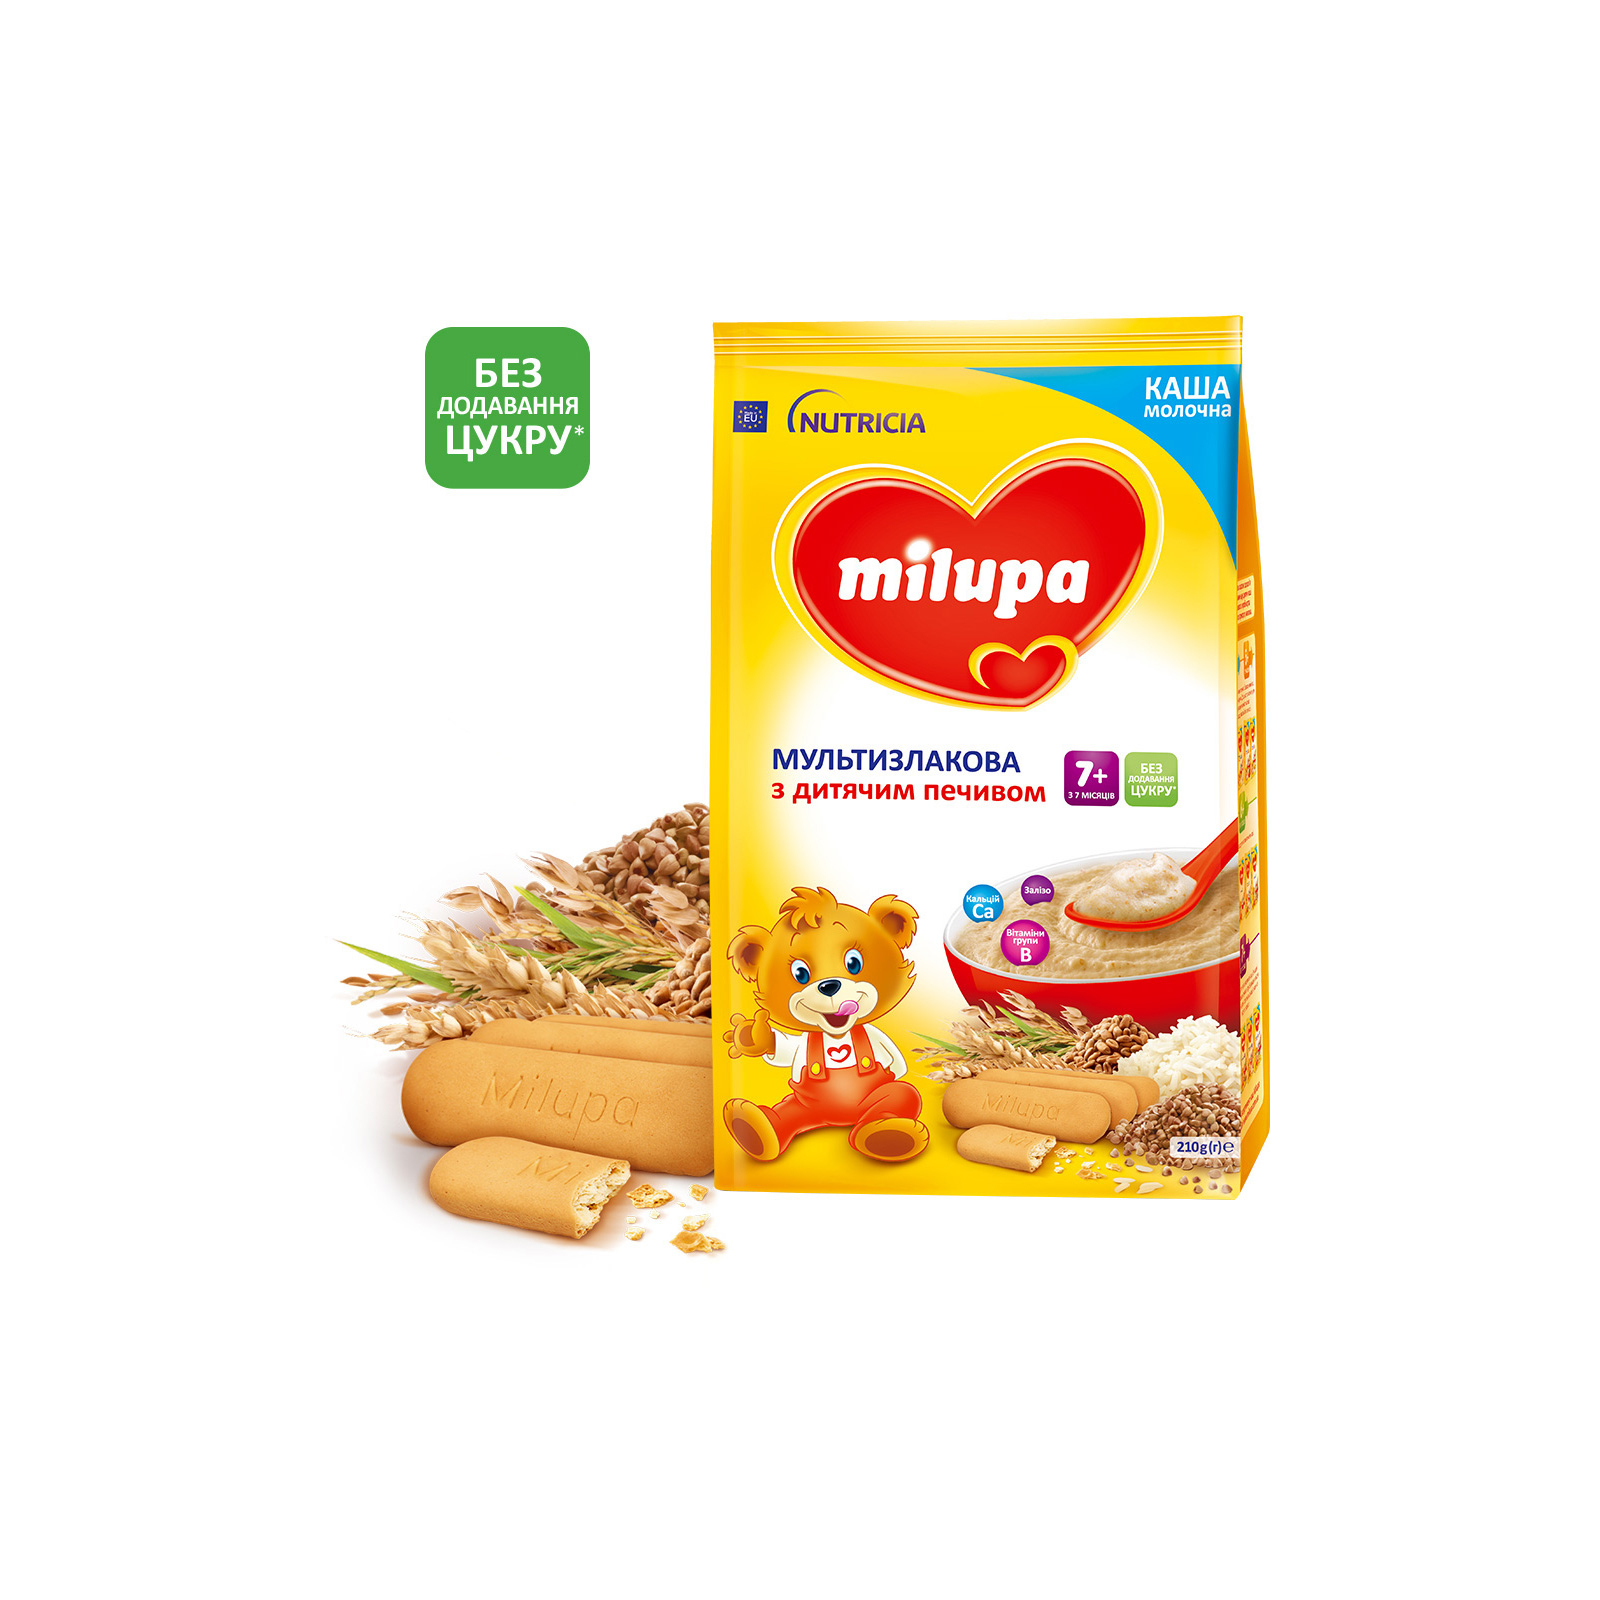 Детская каша Milupa молочная Мультизлаковая с детским печеньем 210 г (5900852931161)